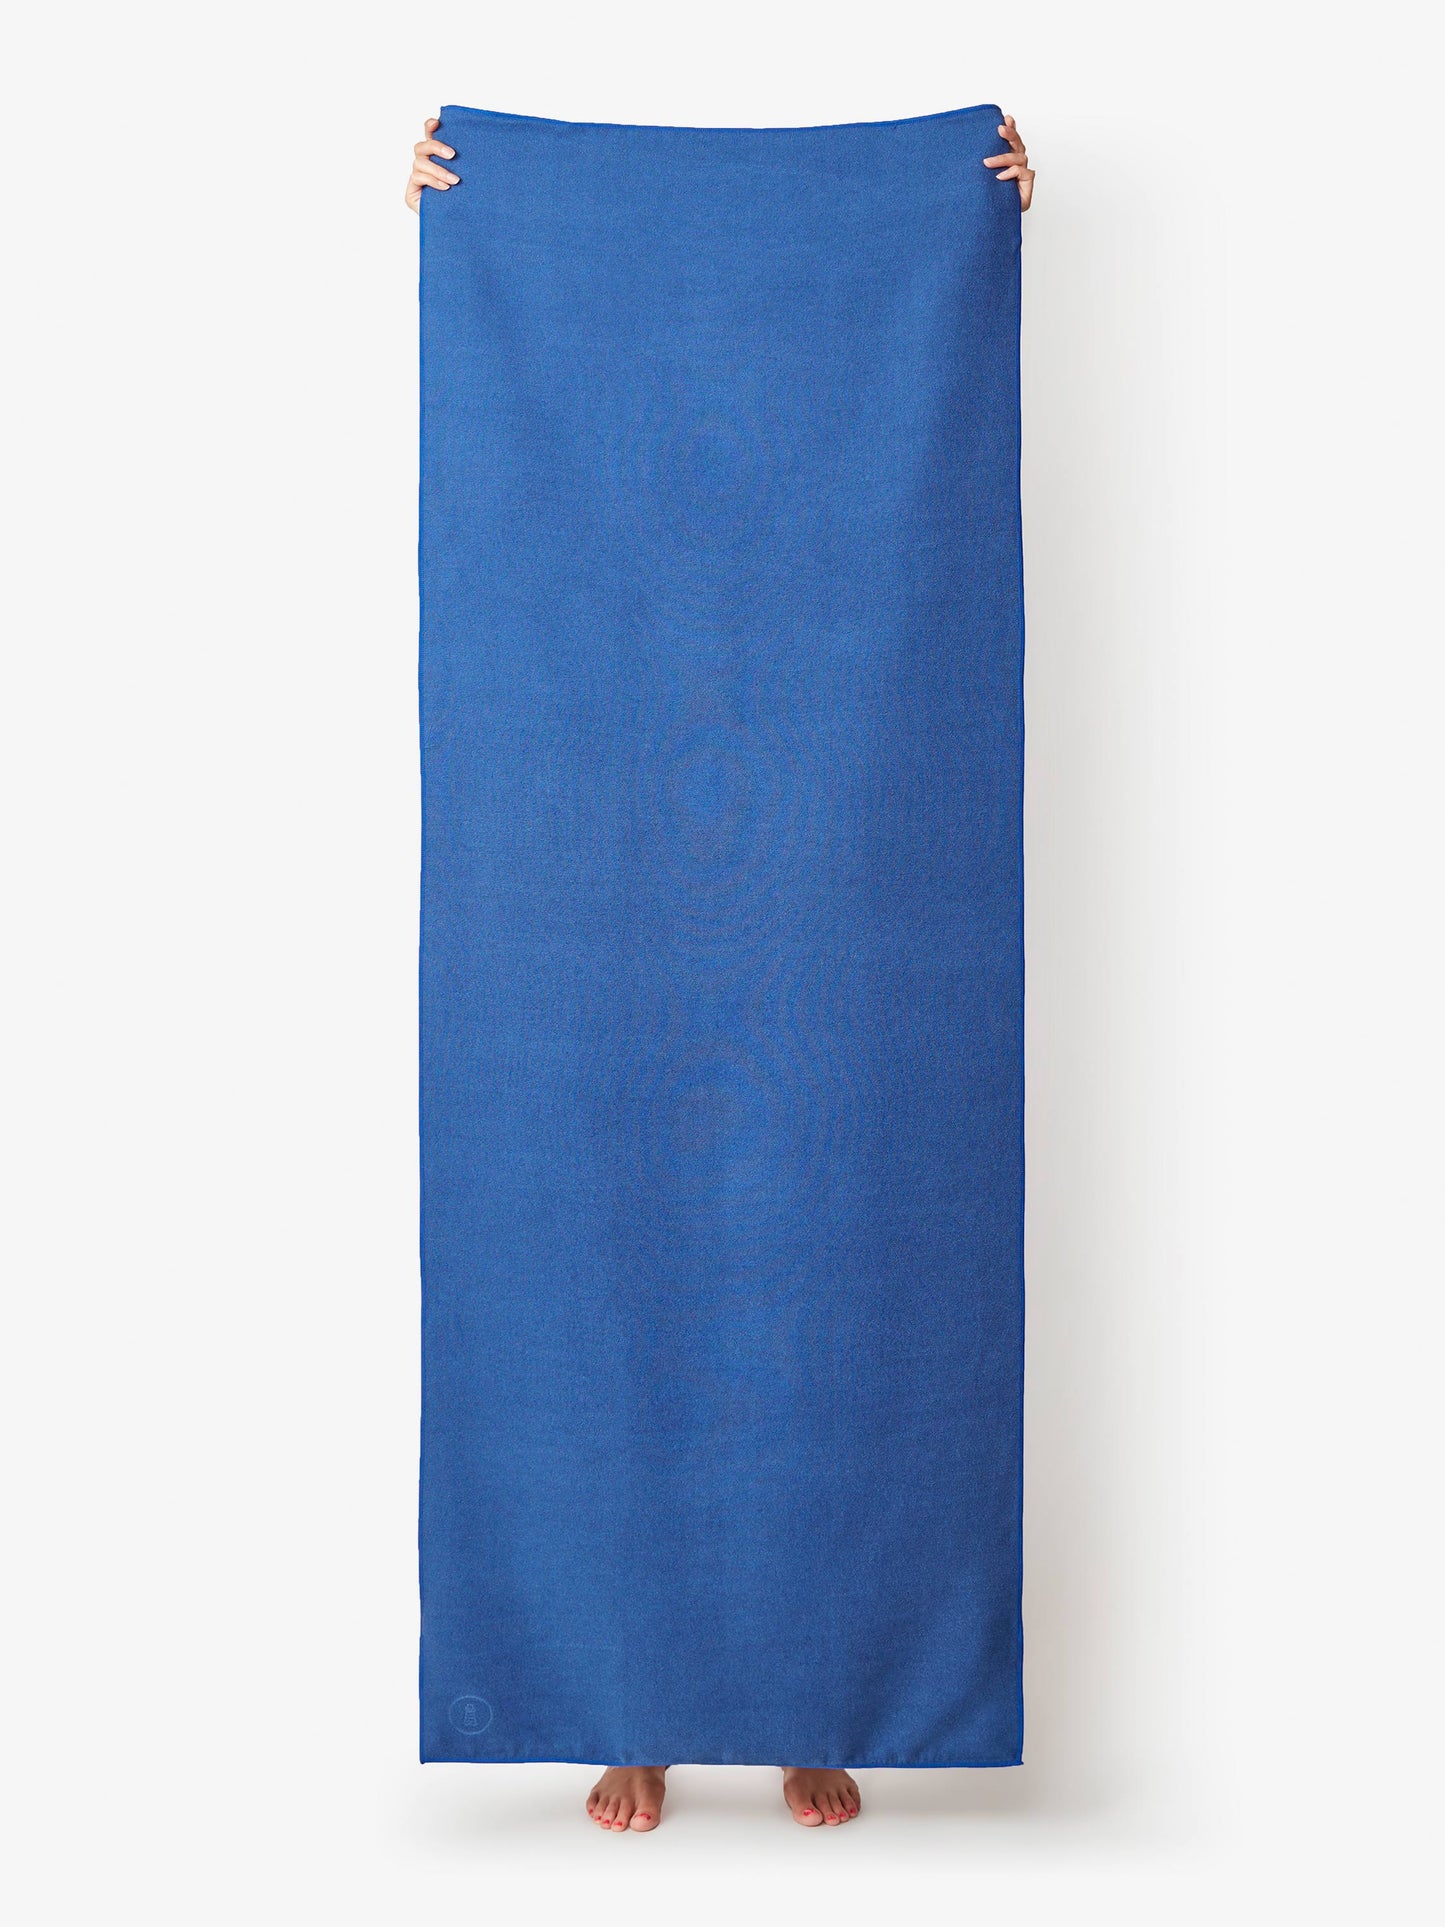 sapphire yoga mat towel by laguna beach textile company